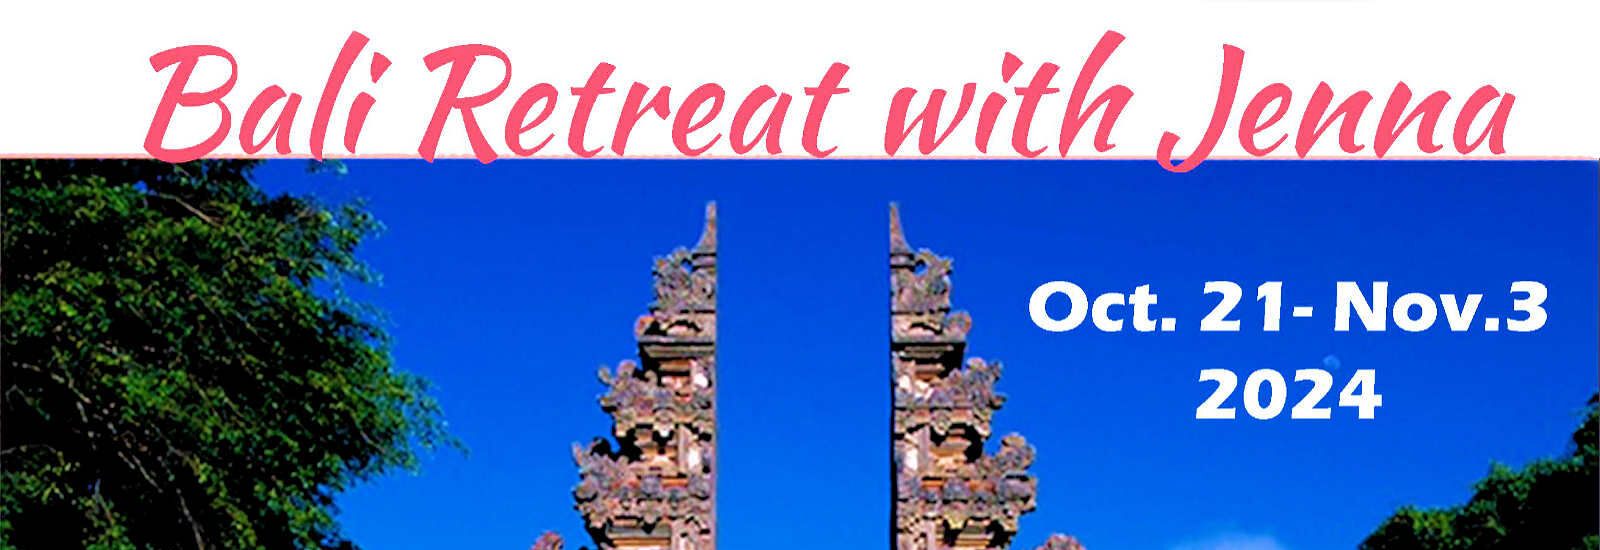 Bali Retreat with Jenna Lomazzo, Oct 21 - Nov 3, 2024